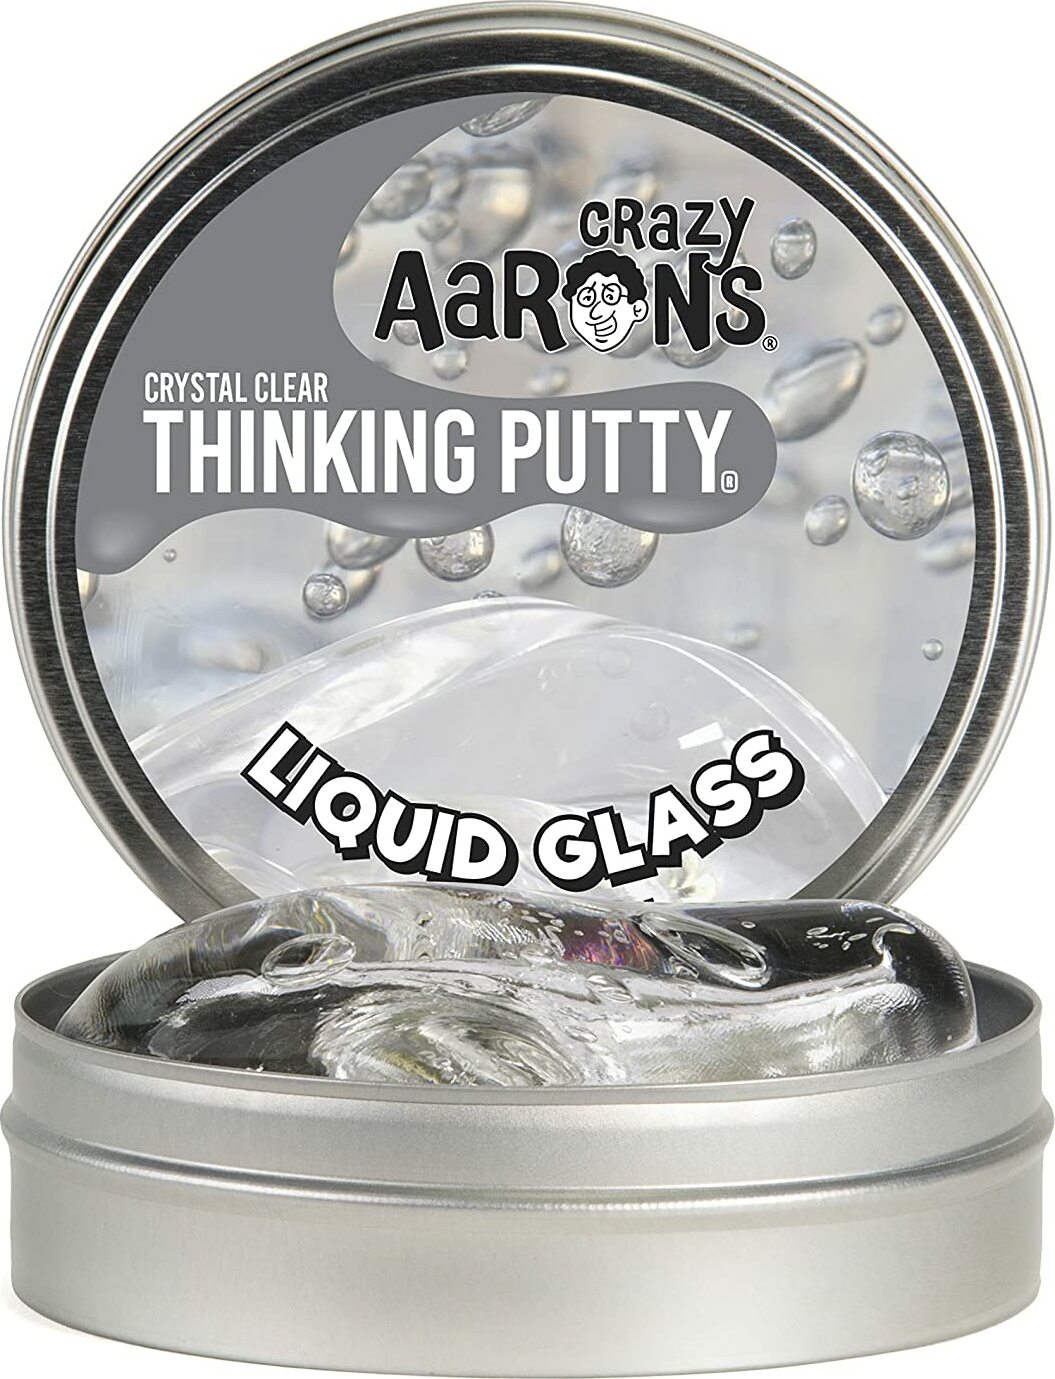 Thinking Putty Liquid Glass